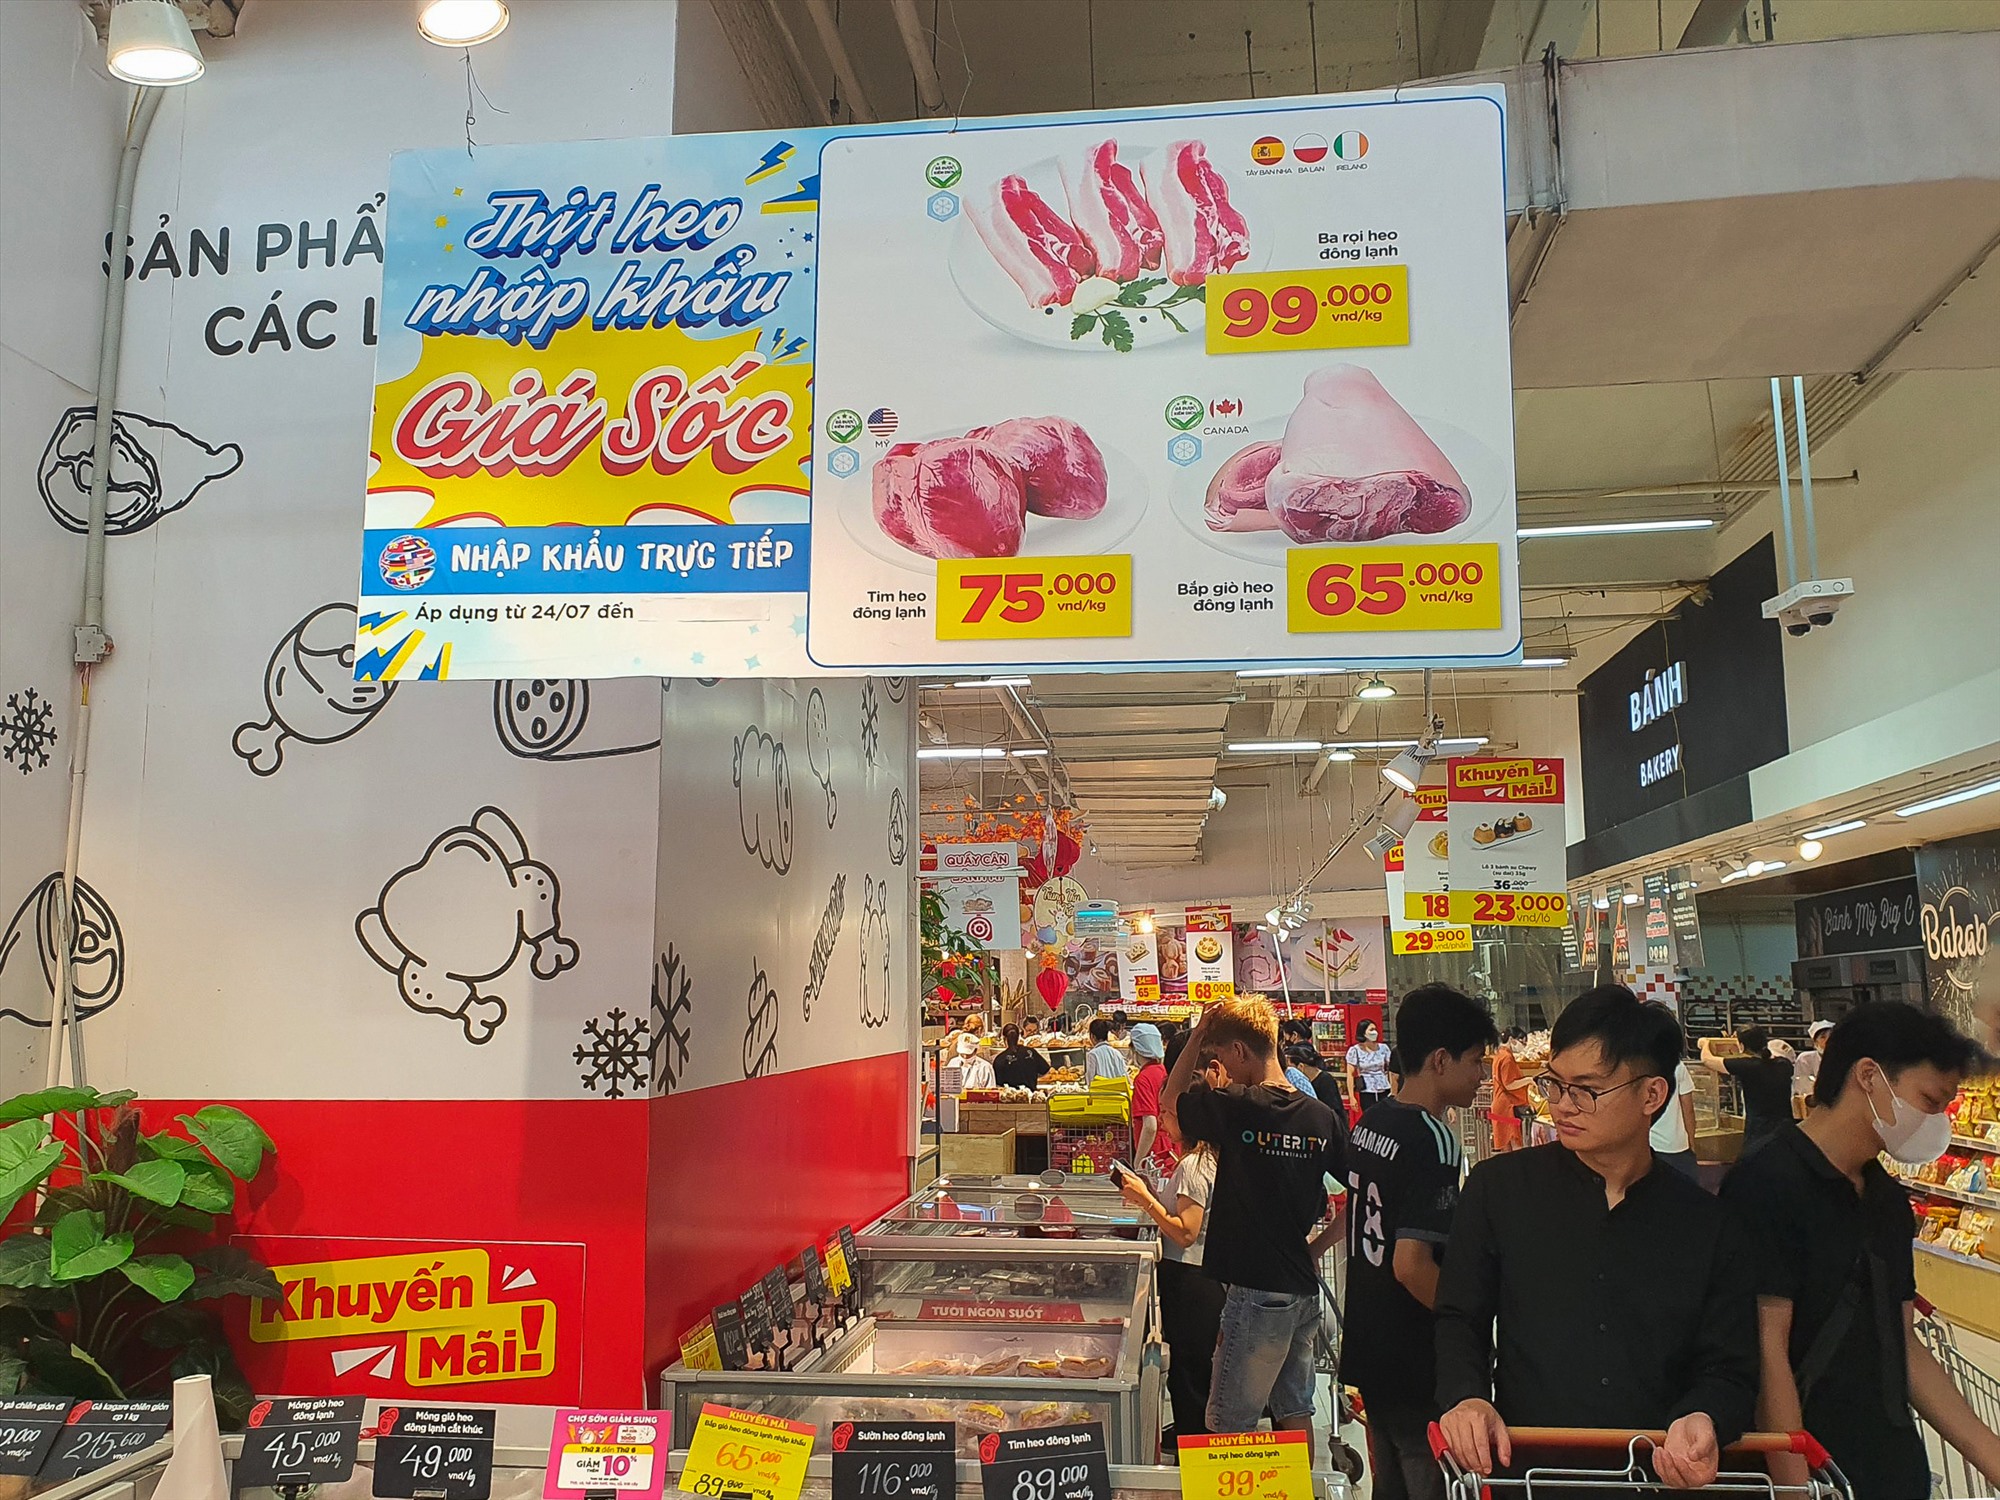 Một số siêu thị trên địa bàn Hà Nội cũng đang điều chỉnh giá thịt lợn. Ảnh: Phan Anh